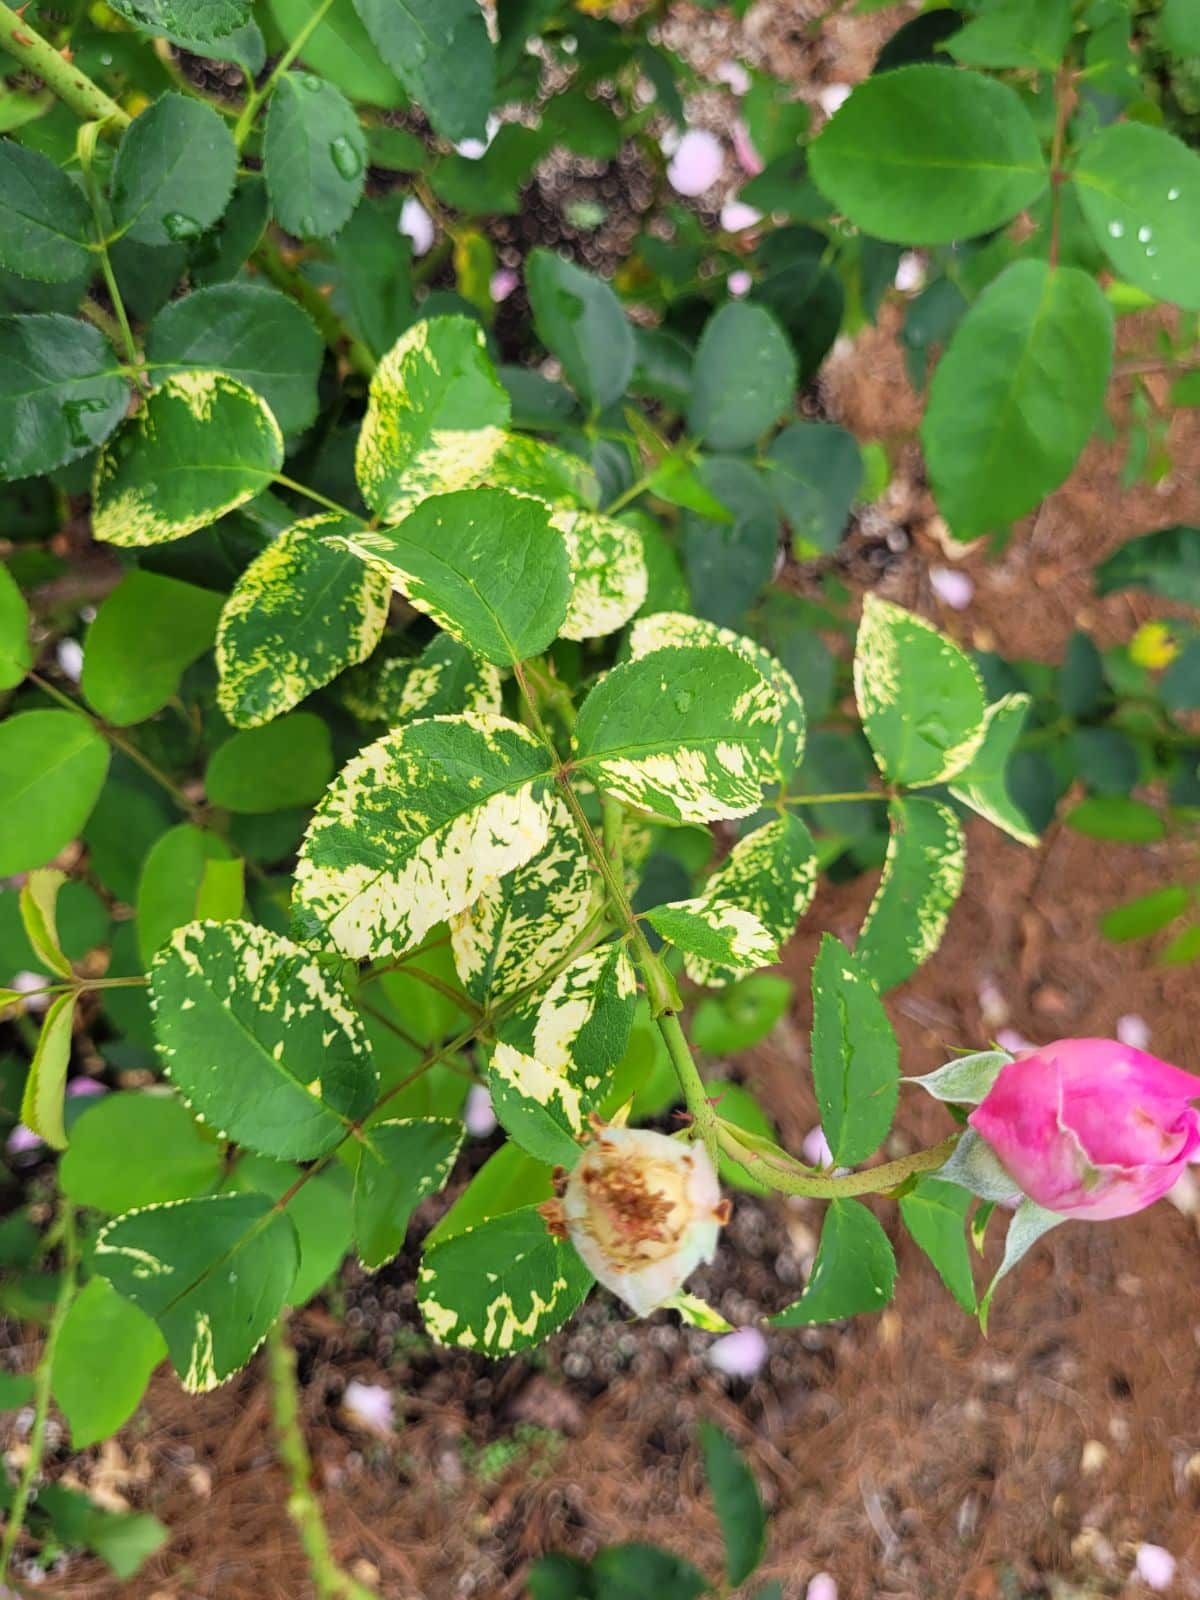 A rose bush showing signs of rose mosaic disease